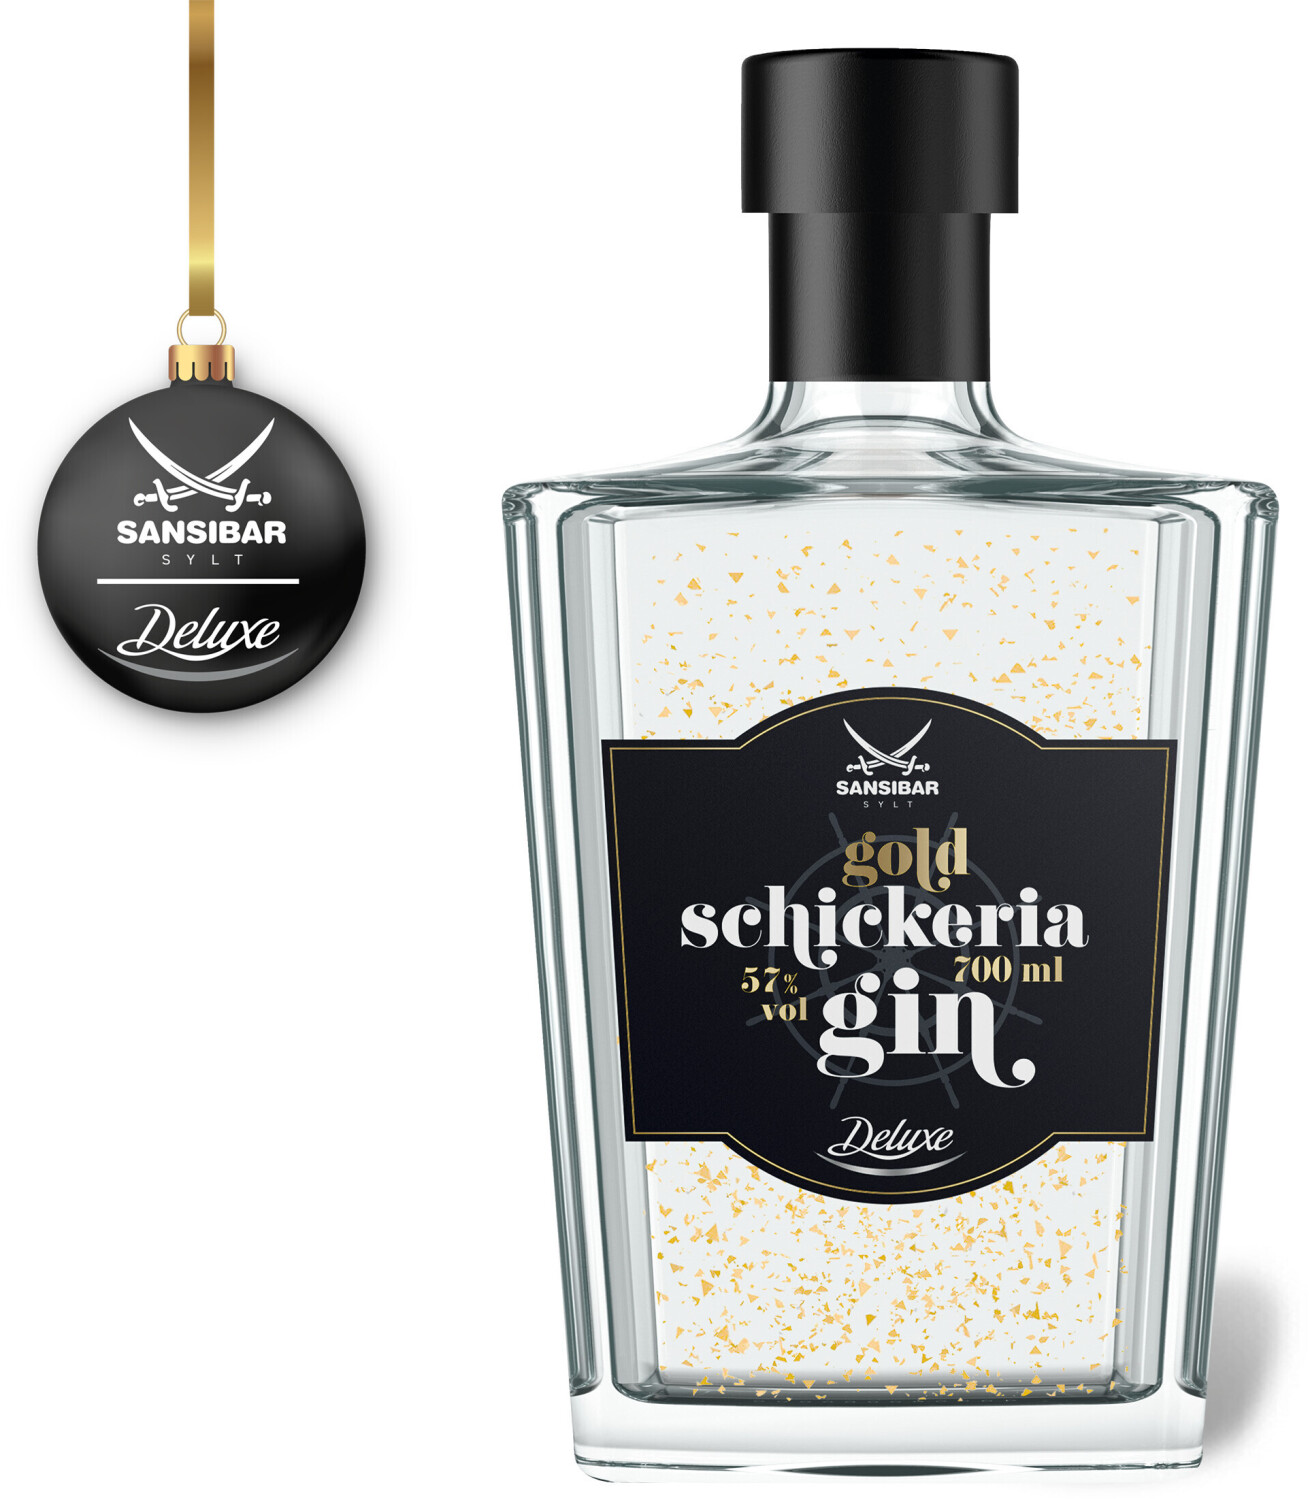 Sansibar Gin bei Schickeria Preisvergleich ab 57% Deluxe 19,99 0,7l Gold € |